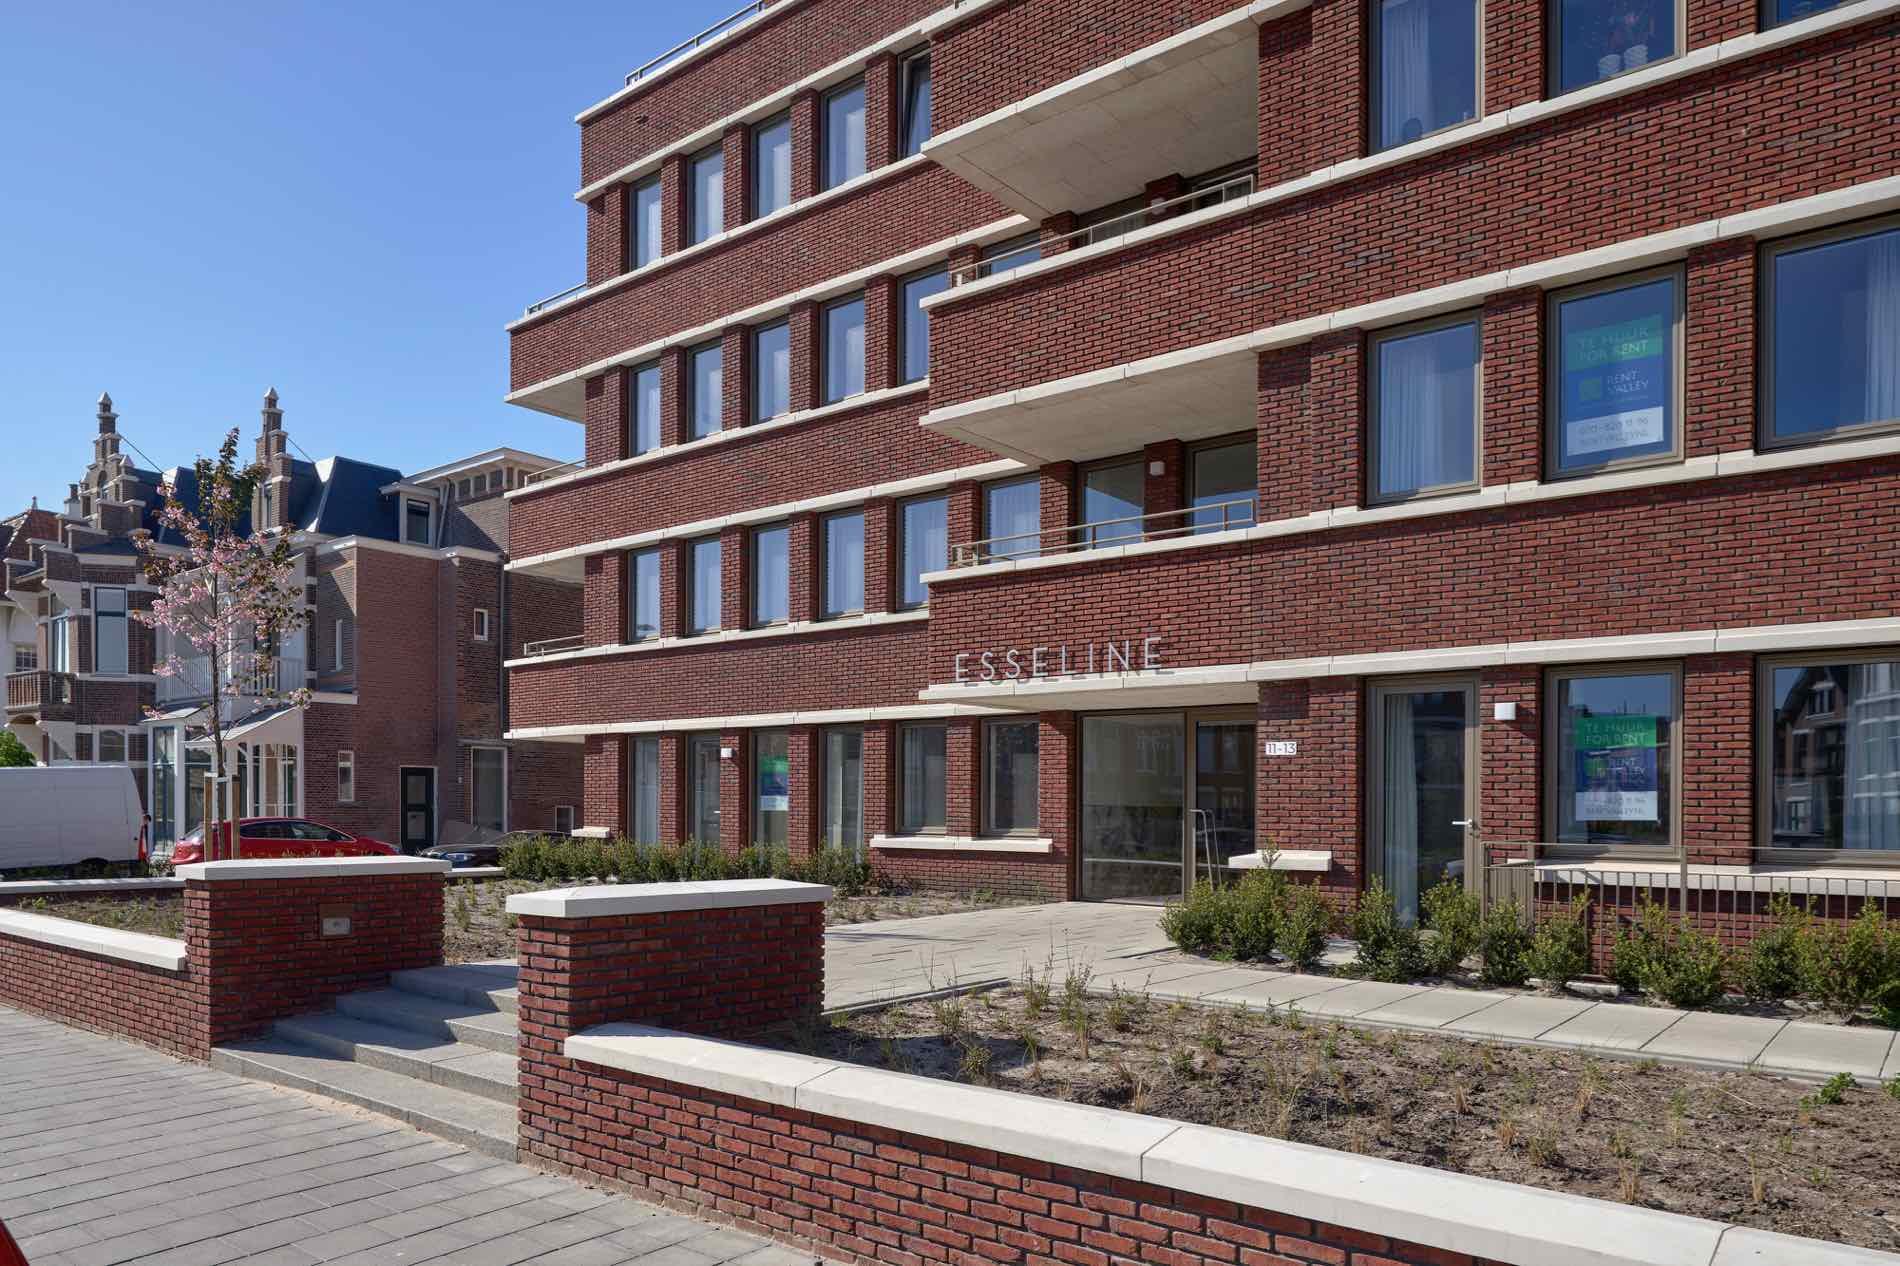 Appartementen Badhuisweg 2 - Geurst & Schulze architecten